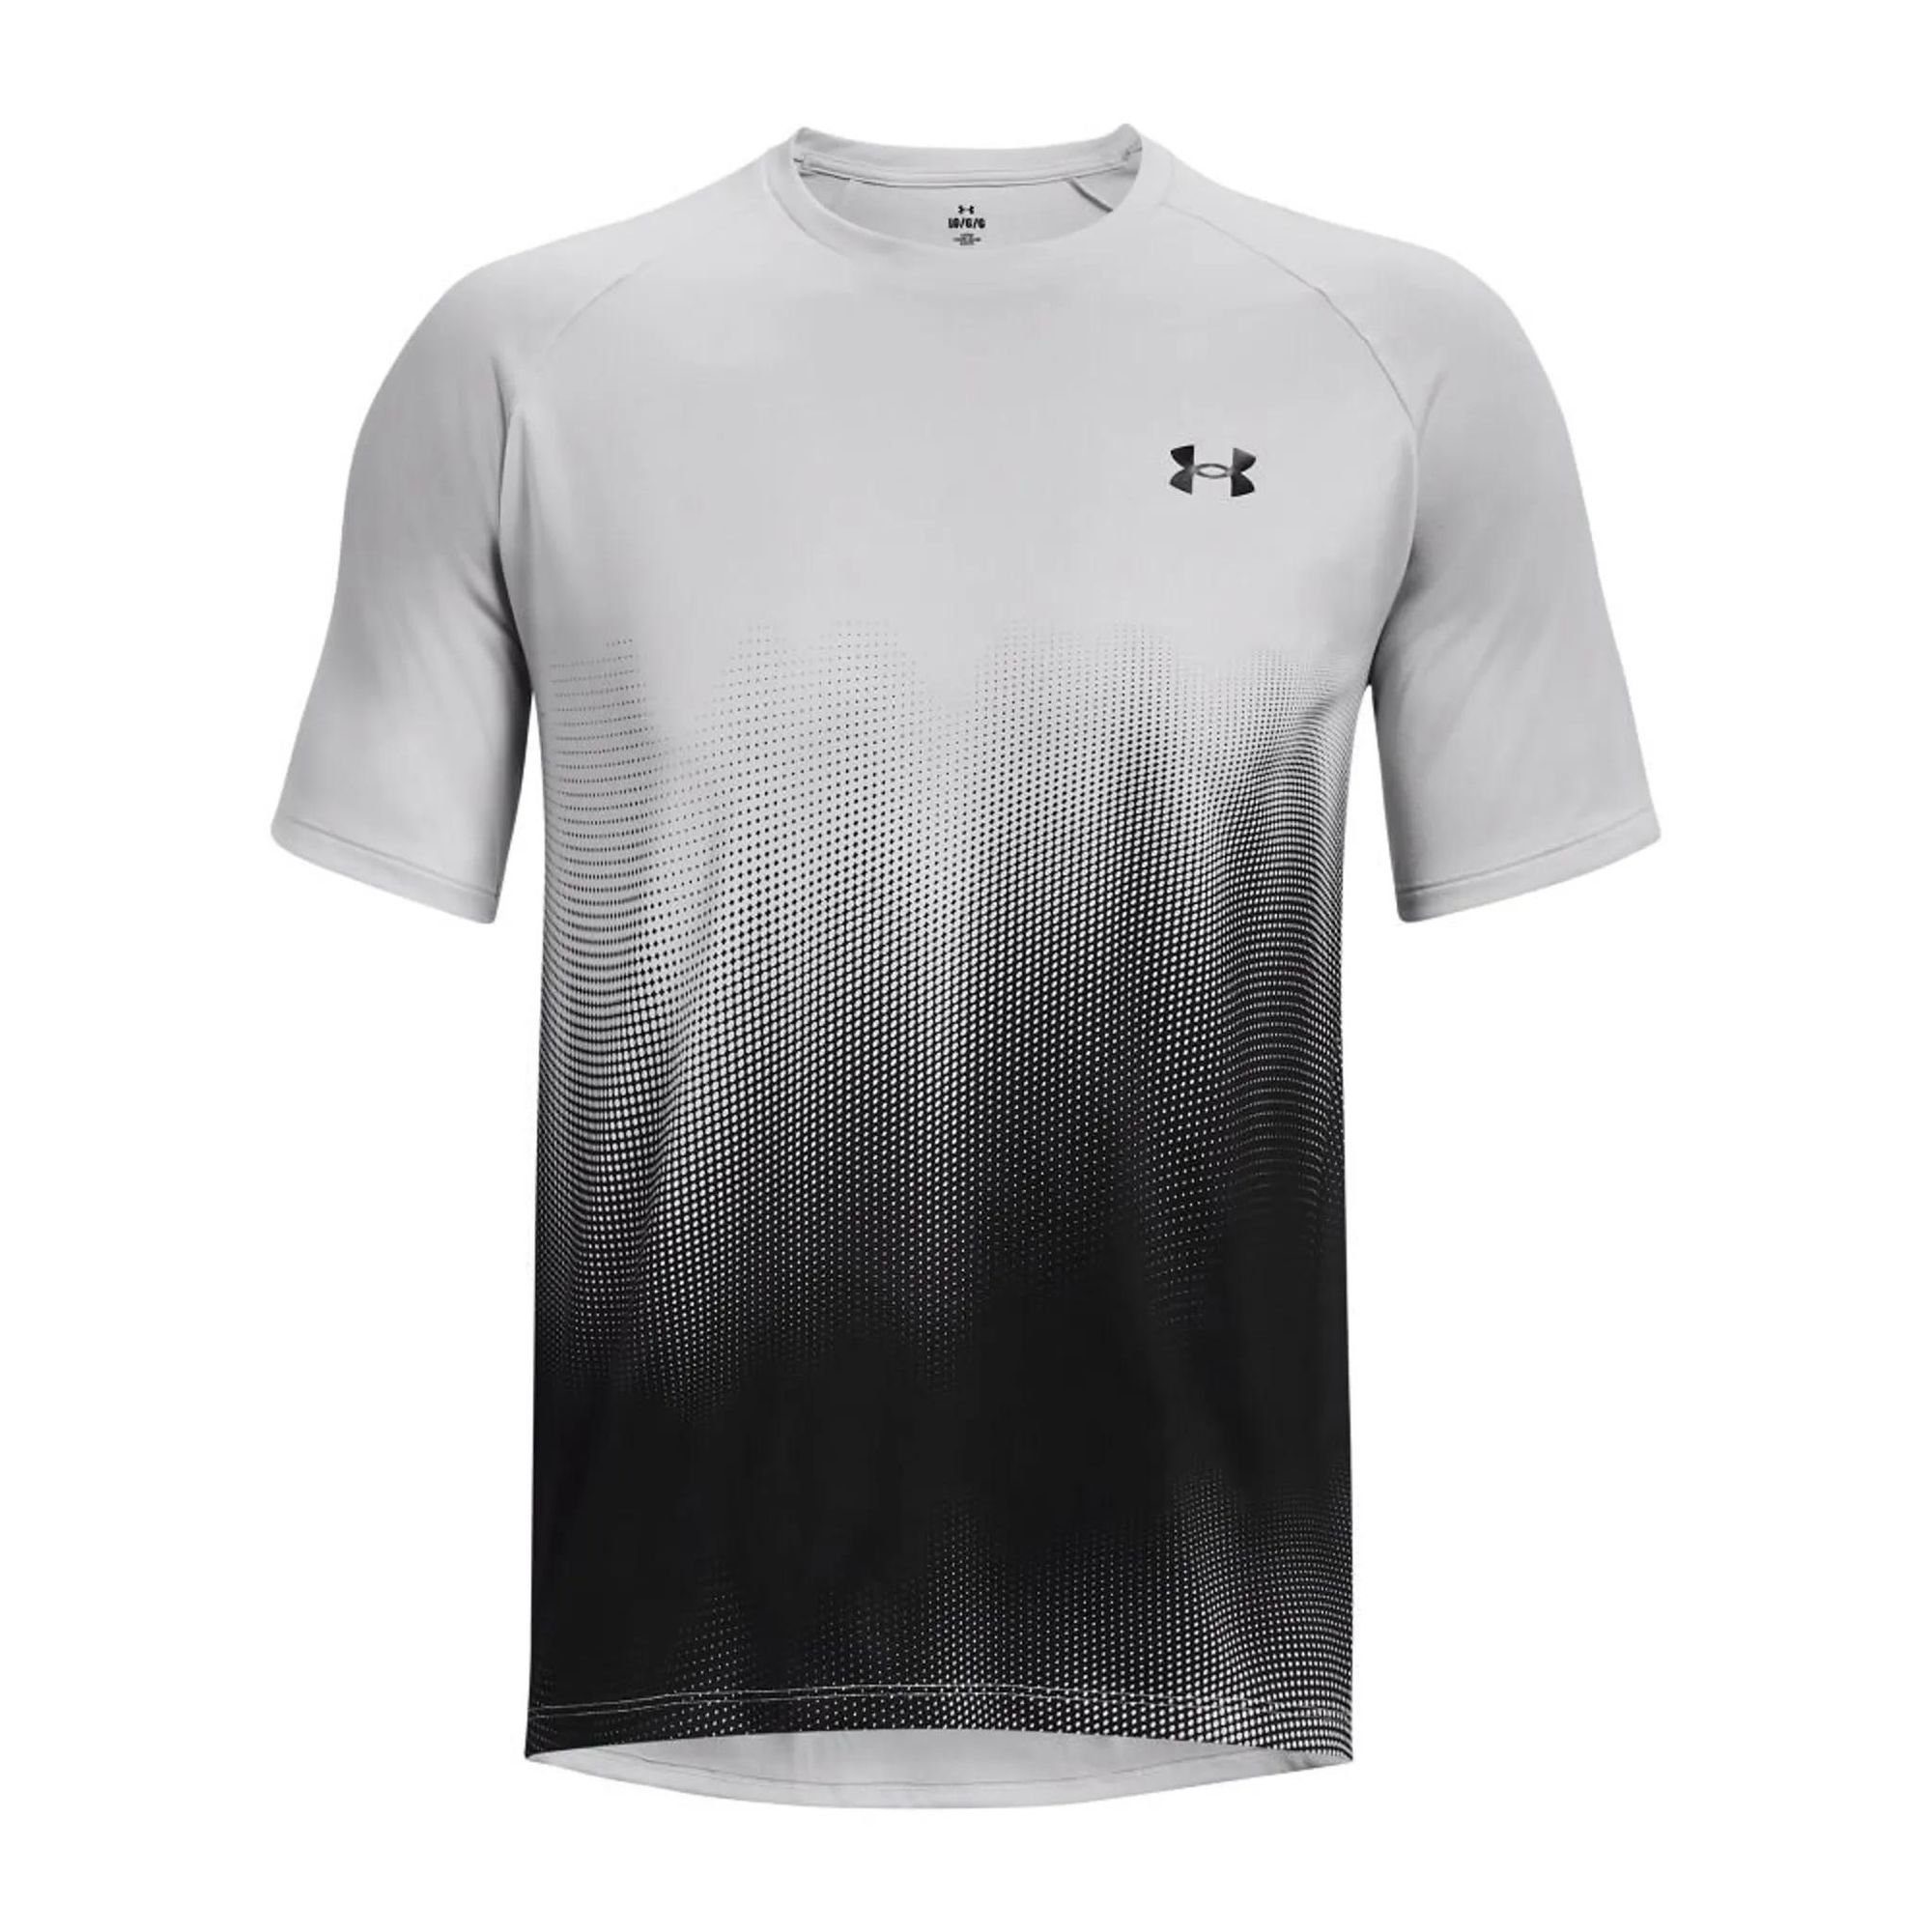 Under Armour® T-Shirt Herren TECH Fade T-shirt Kurzarm - Funktionsshirt Grau